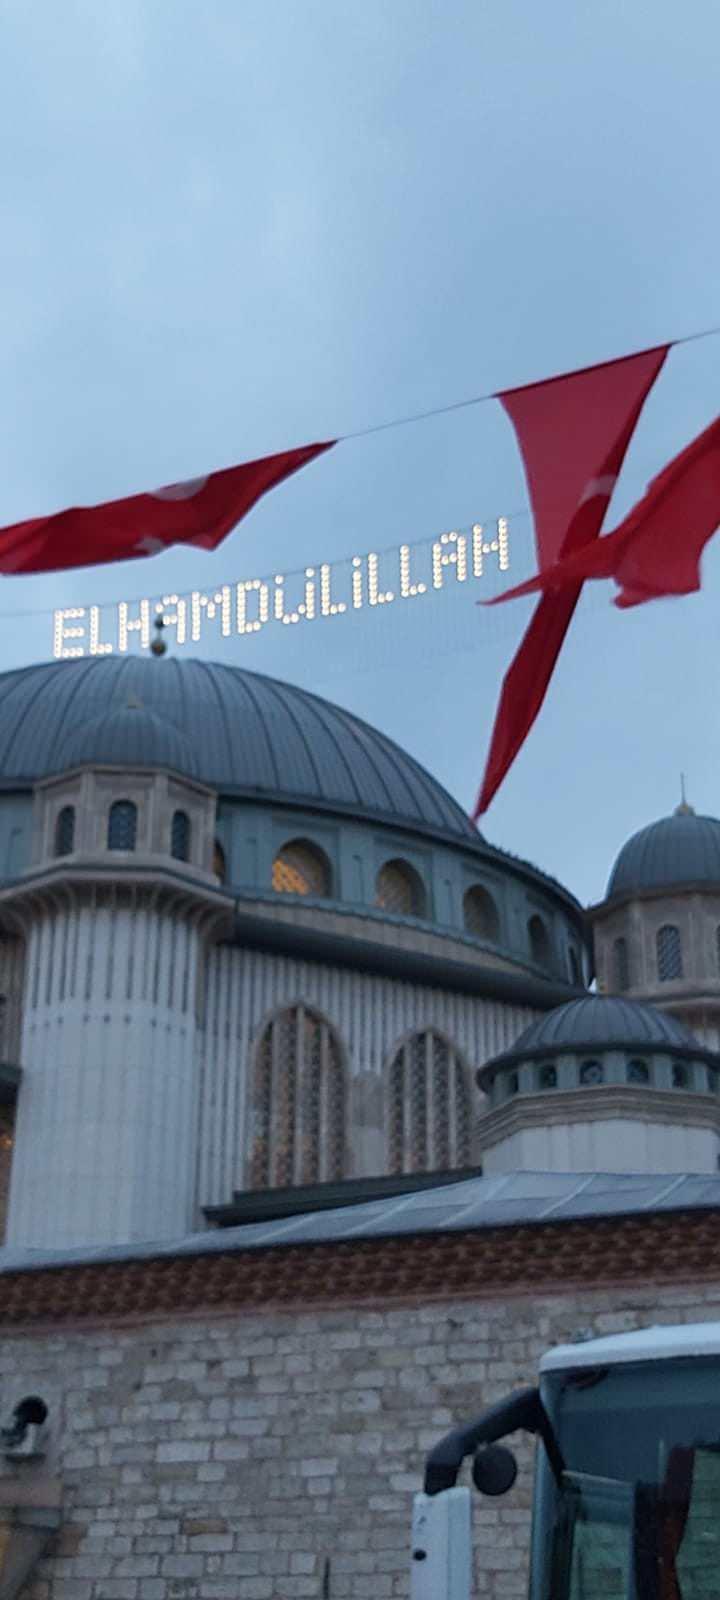 <p>Uzun yıllar yapımı beklenen Taksim Camii'ndeki ilk mahyada, "Elhamdülillah" ifadesi yer aldı. Taksim Camii'nin minarelerine asılan mahyanın görüntüleri sosyal medyada paylaşıldı.</p>

<p> </p>
